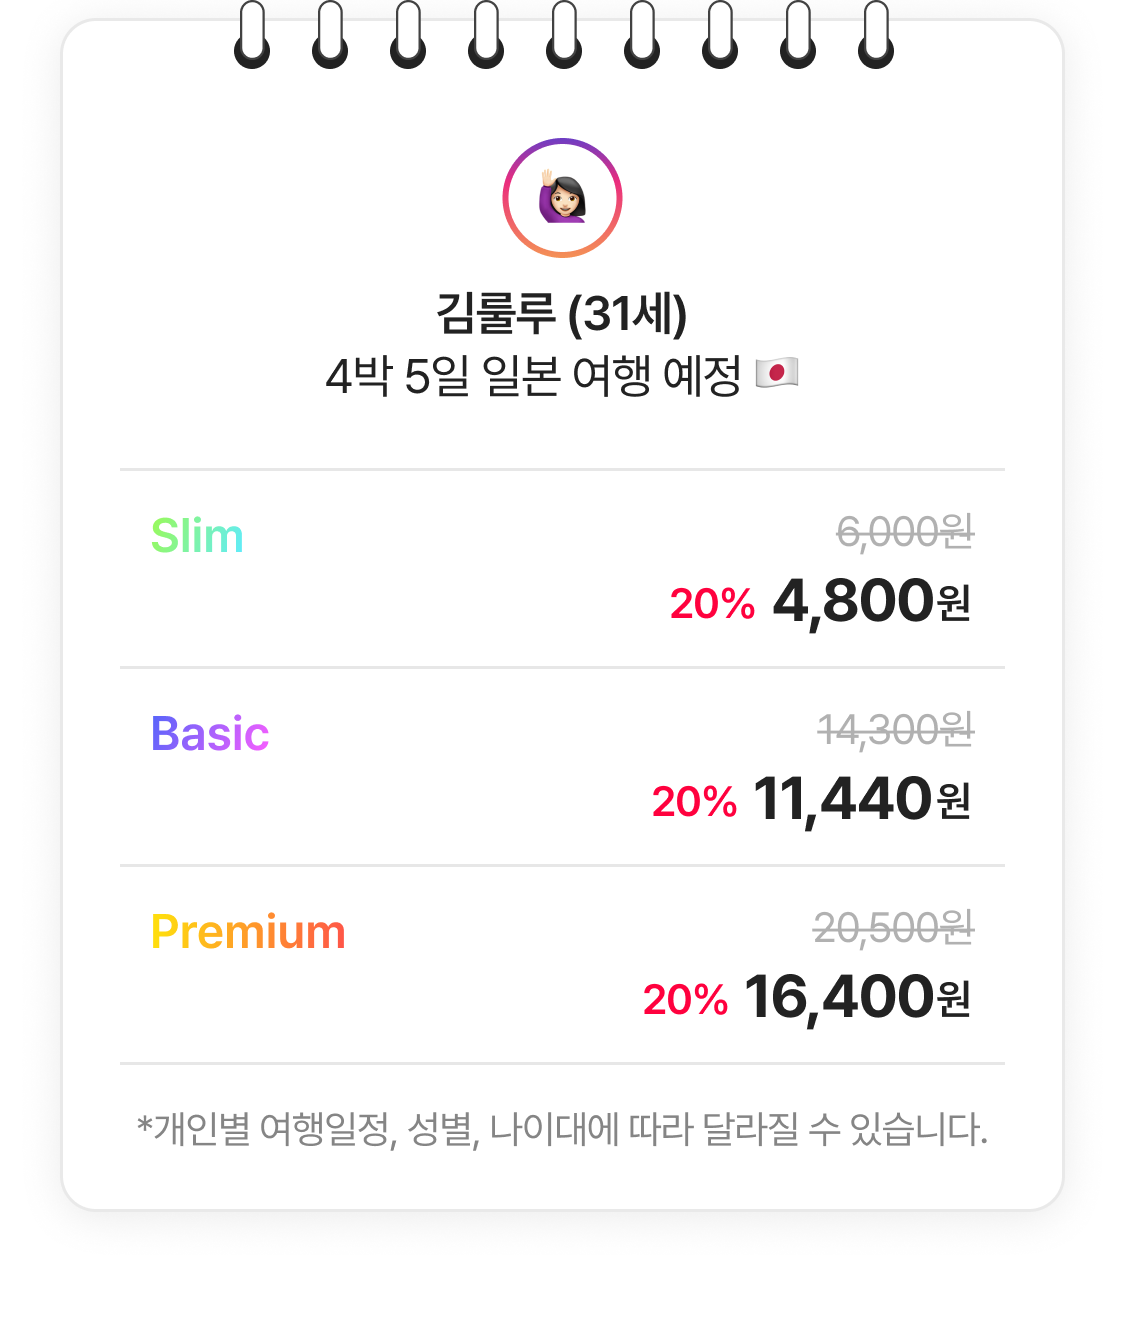 Slim 4,800원 Basic 11,440원 Premium 16,440원